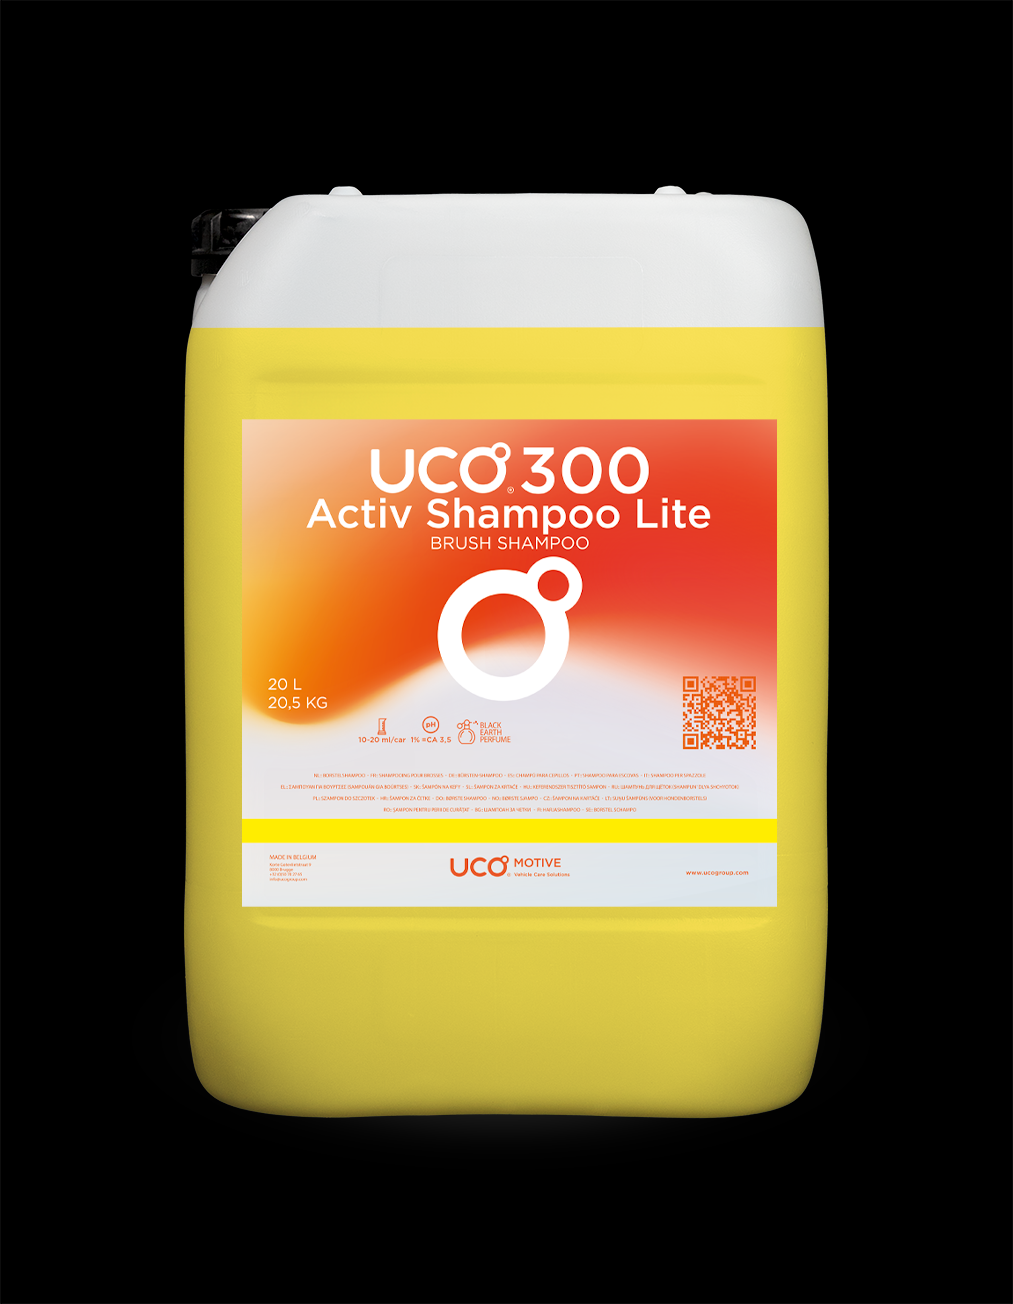 UCO300 Activ Shampoo Lite